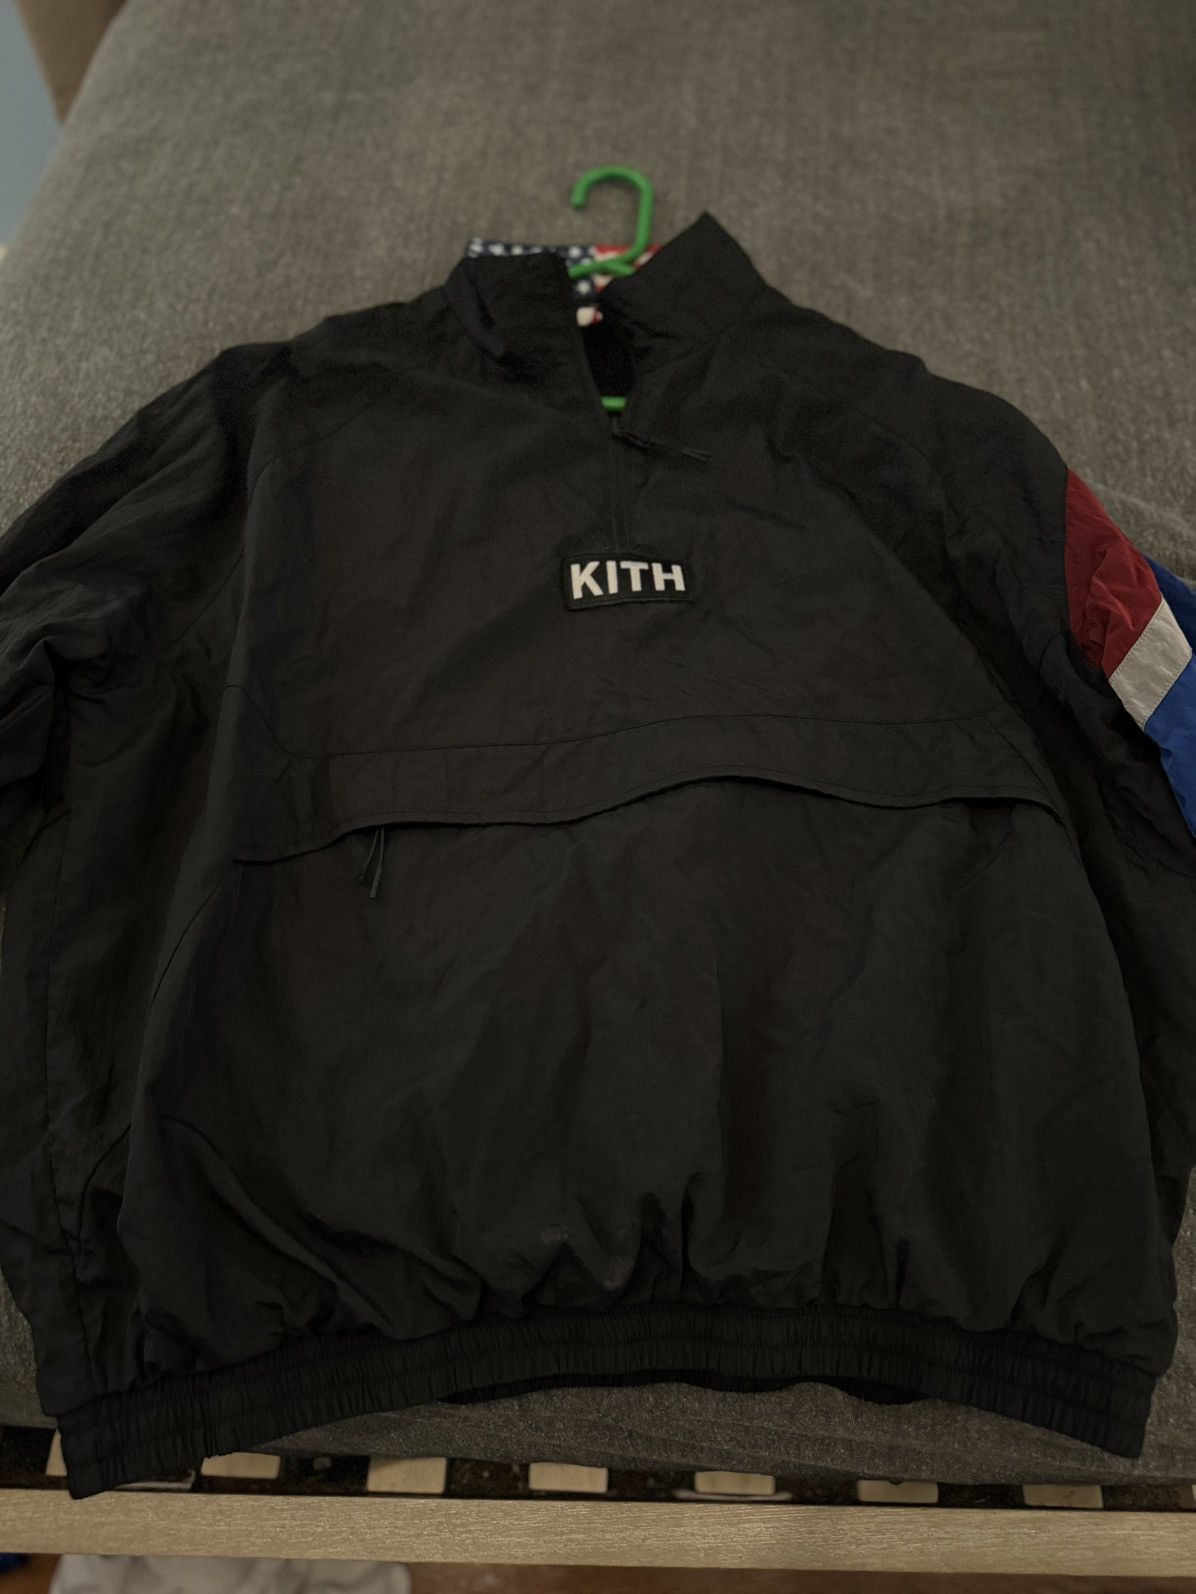 Kith Kith Team USA Nylon Quarter Zip Vintage Retro Look | Grailed